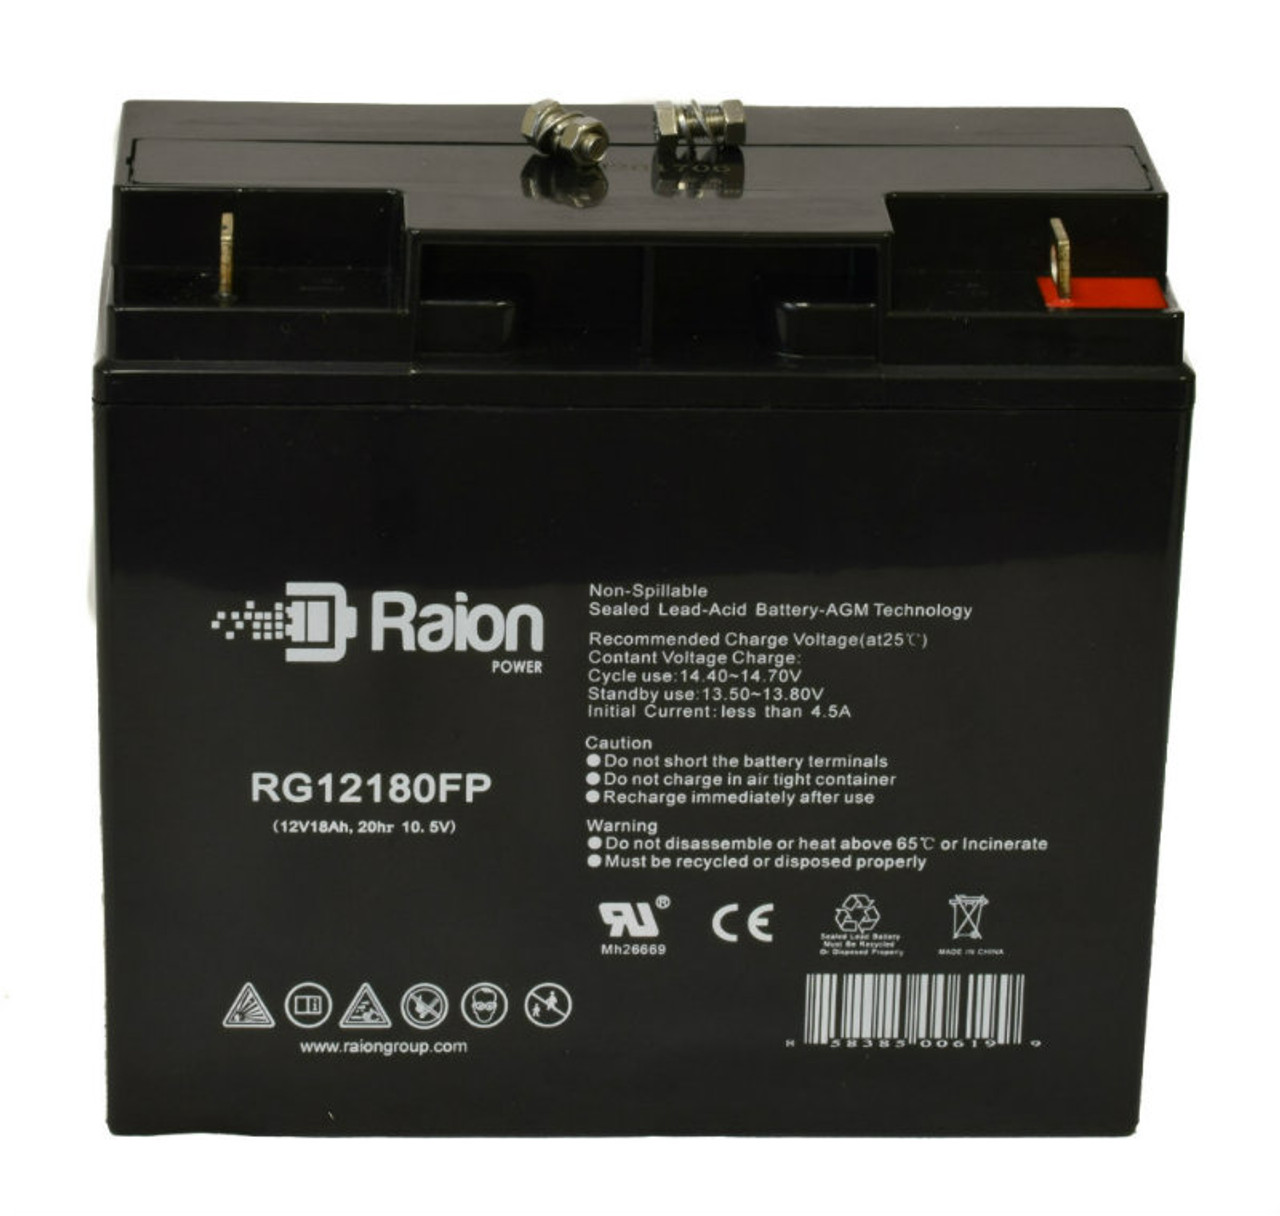 Raion Power RG12180FP 12V 18Ah Lead Acid Battery for Japan PE15-12R